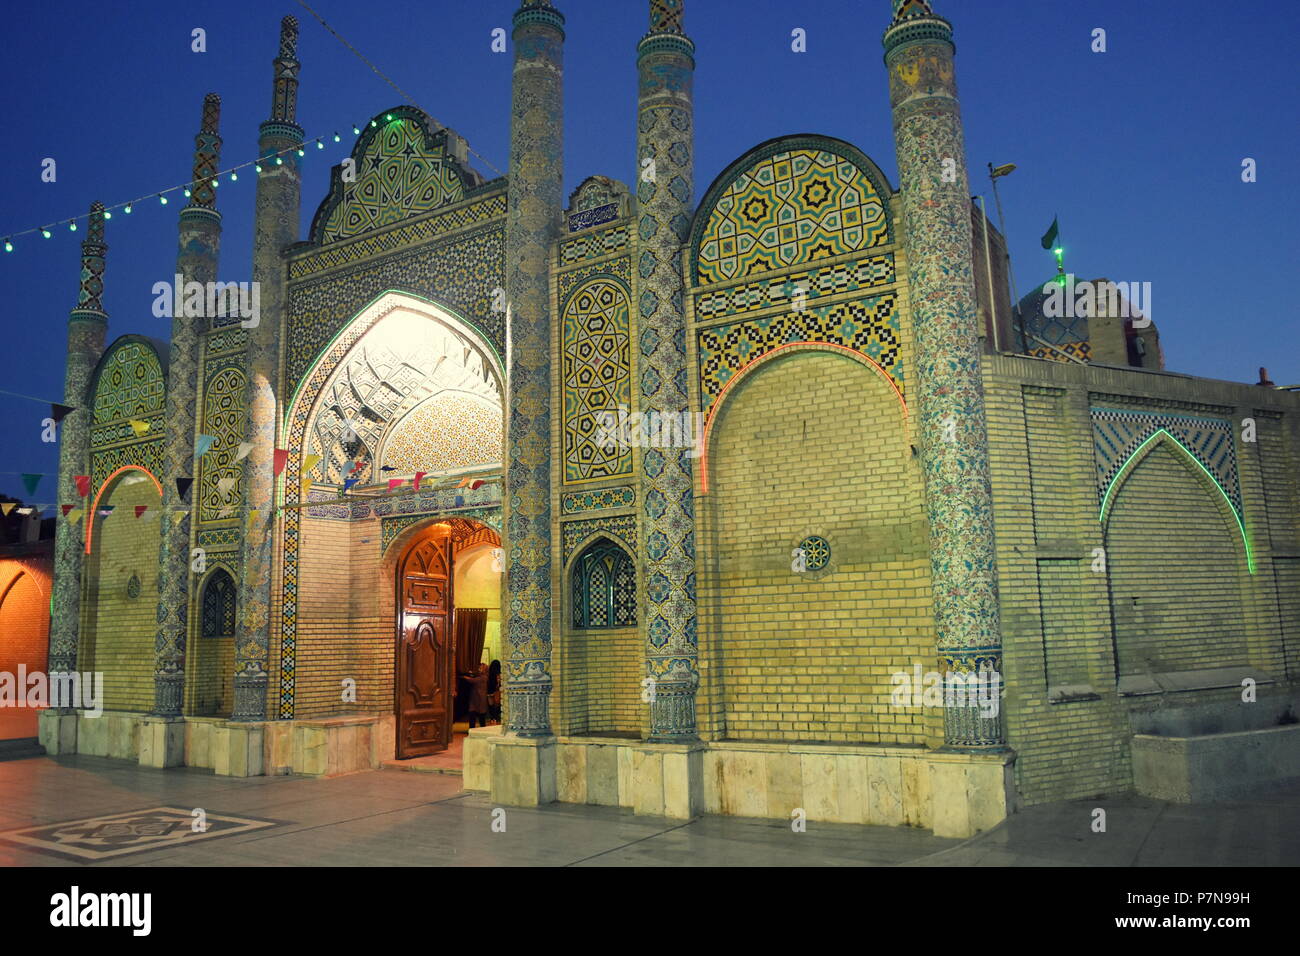 La bella architettura della vecchia Shia santuario islamico e moschea con tipici del Medio Oriente e architettura persiana al tramonto a Qazvin, Iran Foto Stock